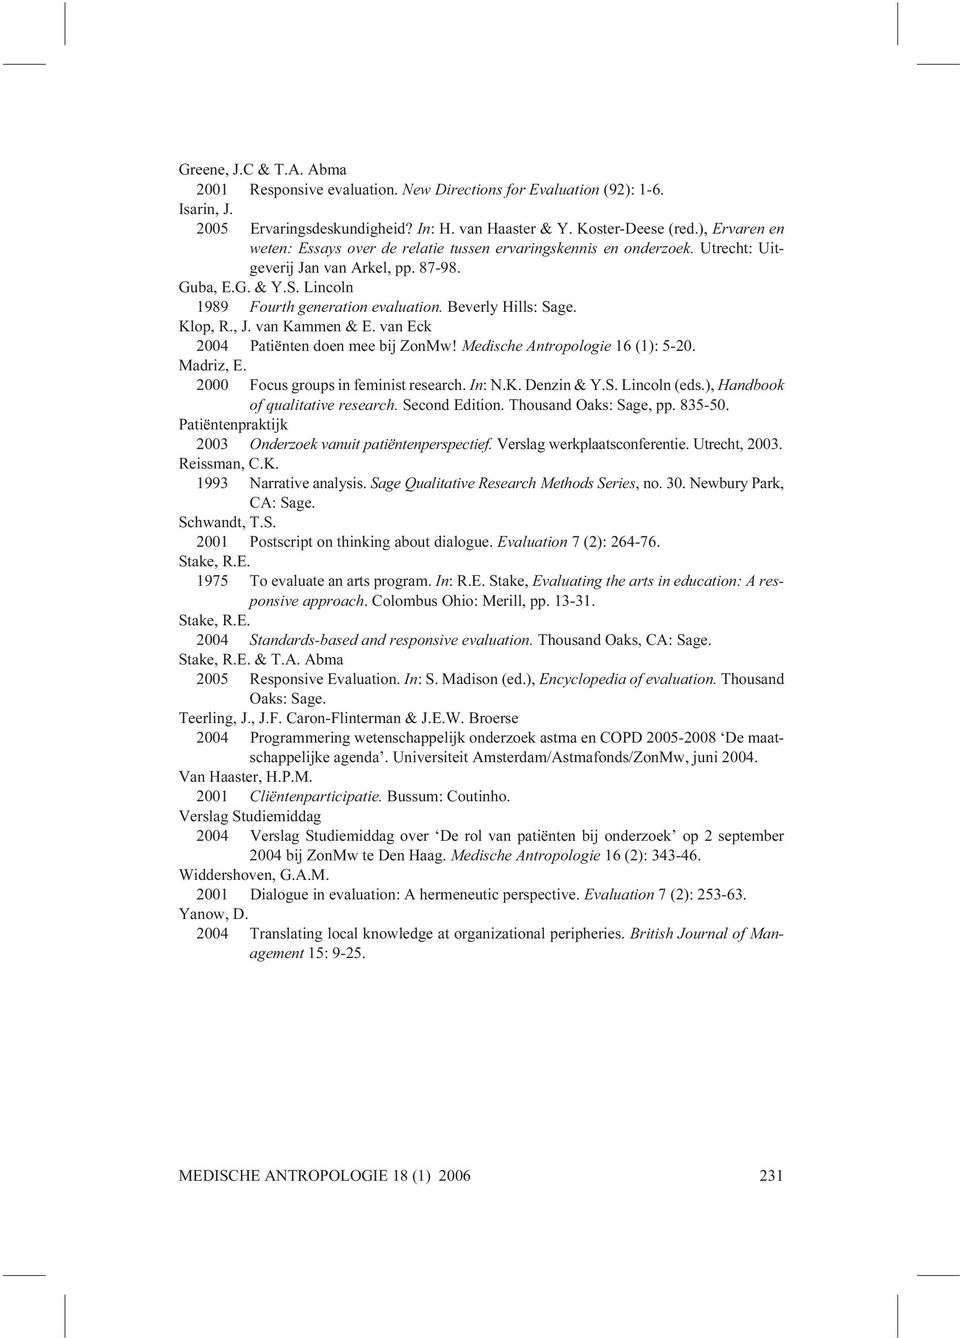 Beverly Hills: Sage. Klop, R., J. van Kammen & E. van Eck 2004 Patiënten doen mee bij ZonMw! Medische Antropologie 16 (1): 5-20. Madriz, E. 2000 Focus groups in feminist research. In: N.K. Denzin & Y.